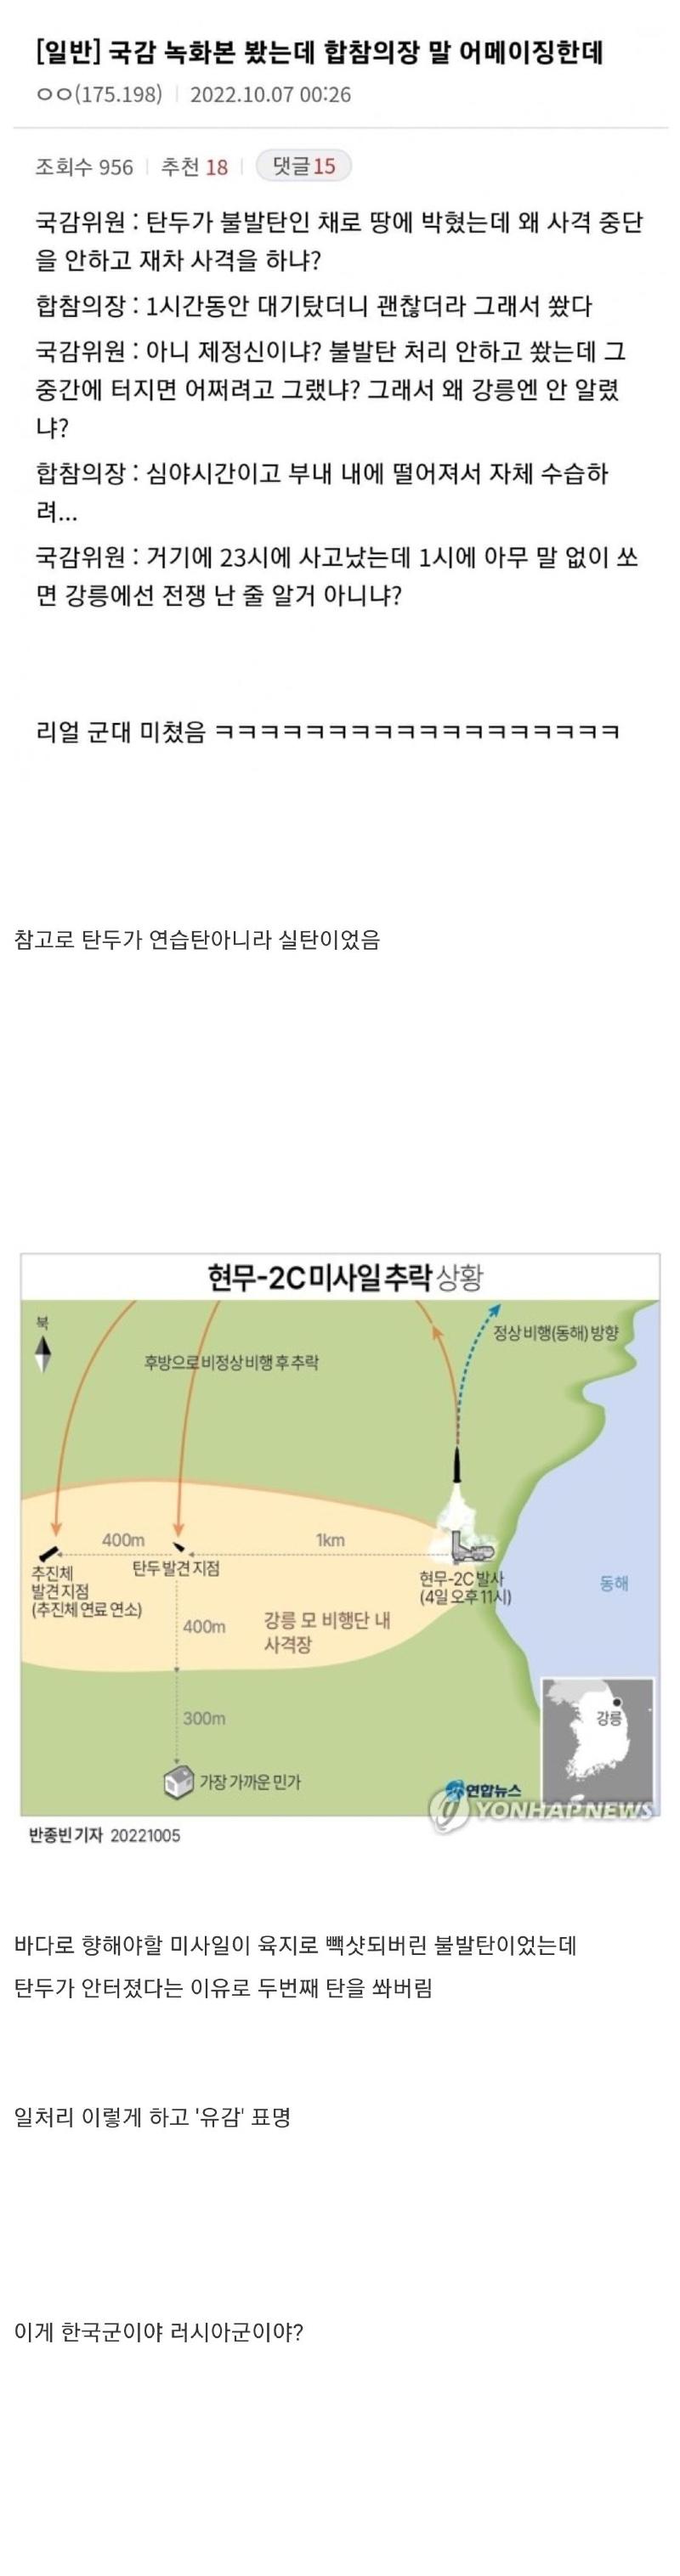 강릉 미사일 낙탄 사건